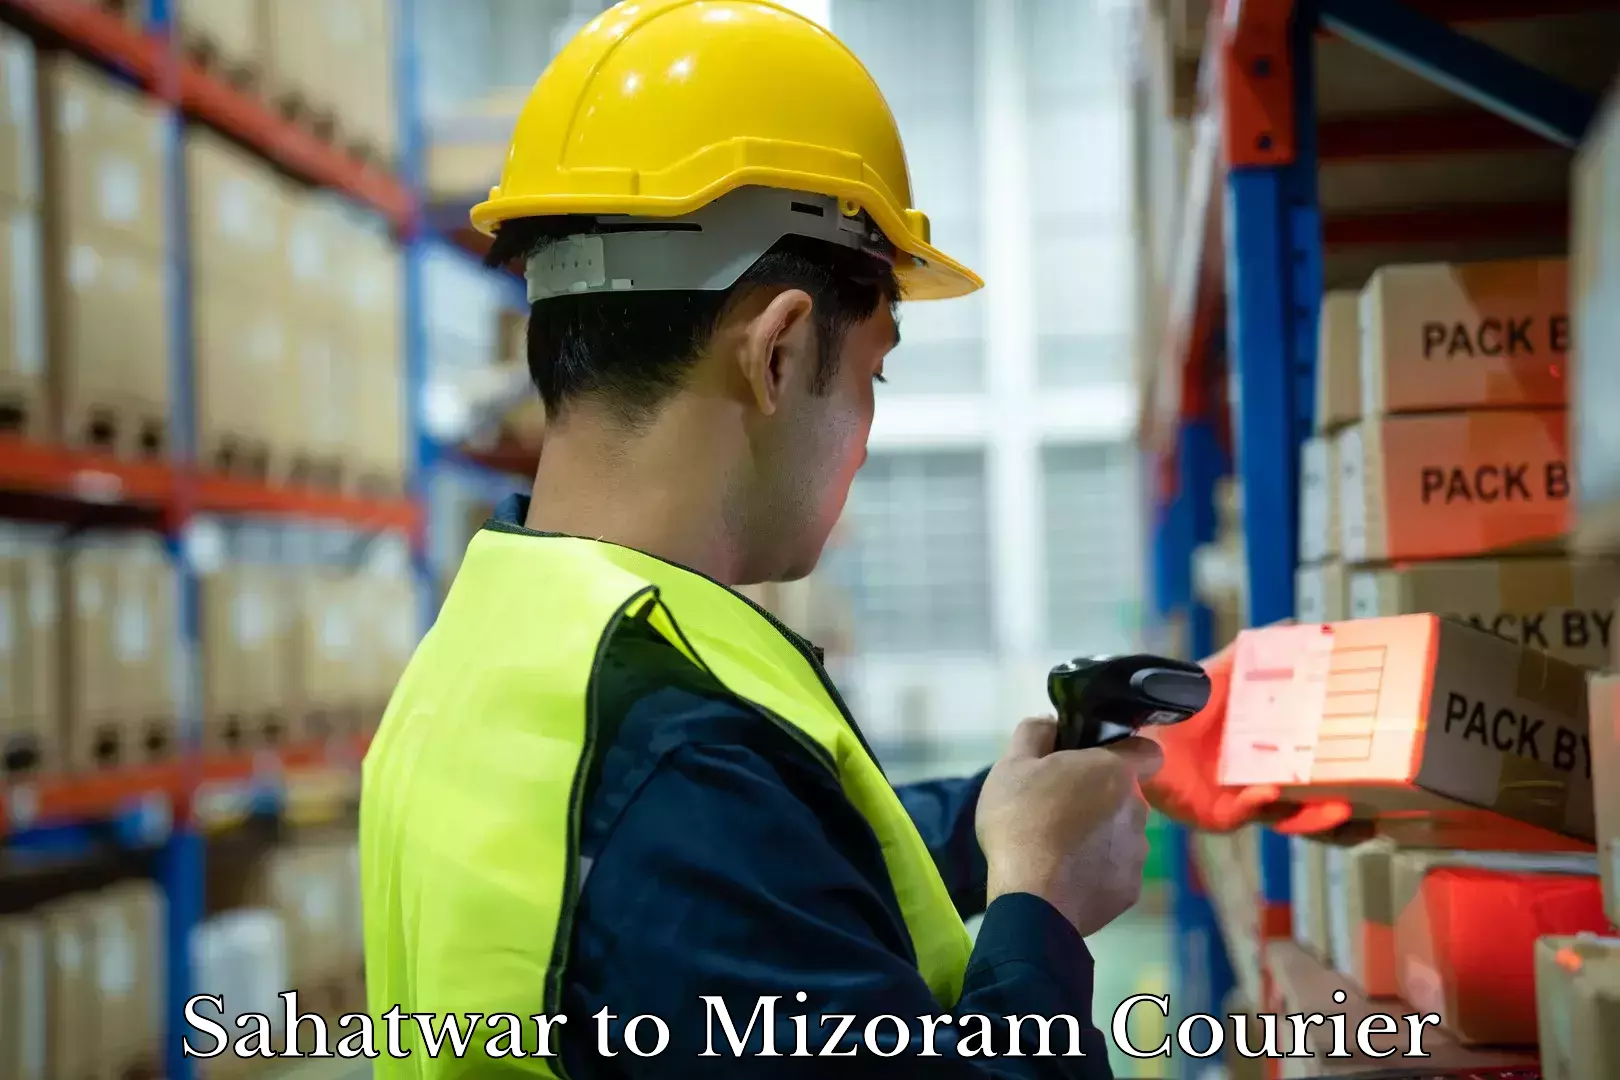 Baggage shipping rates calculator Sahatwar to Mizoram University Aizawl